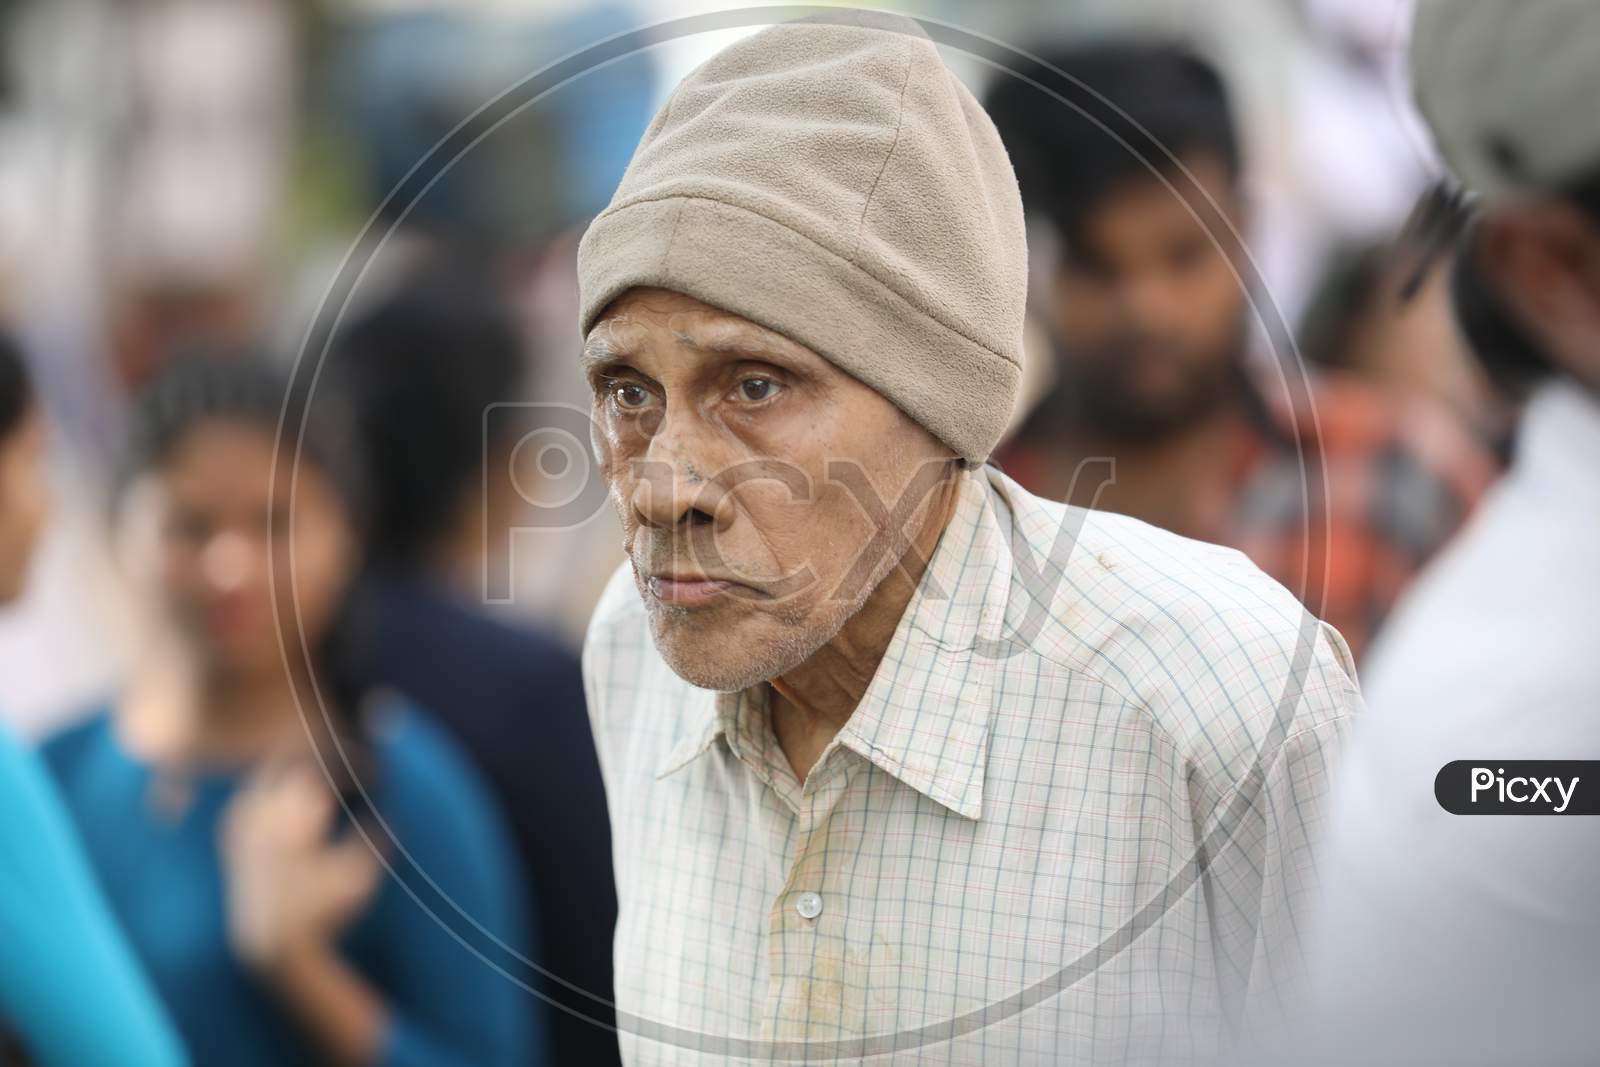 An Elderly Man Wearing a Monkey Cap